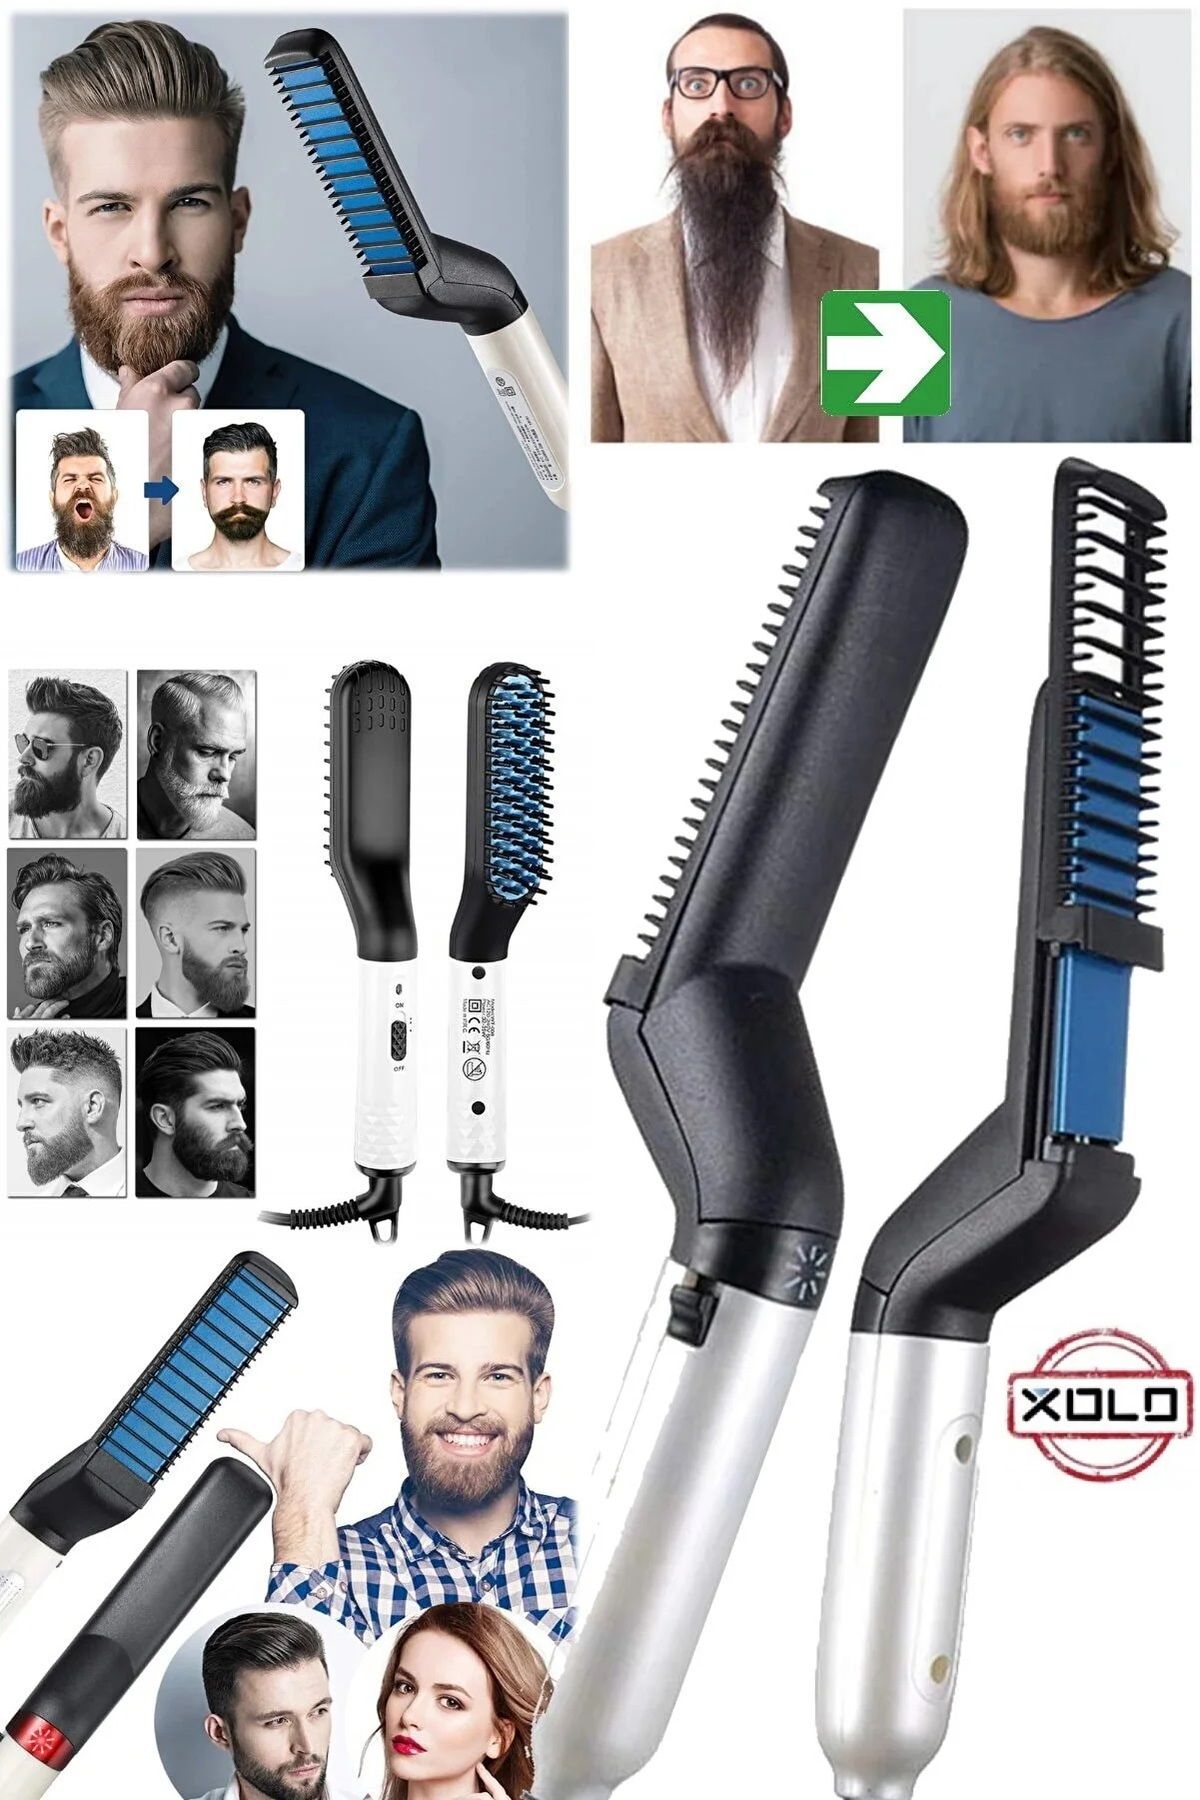 Xolo Günlük Seyehata Uygun Erkeklere Özel Sakal Ve Saç Düzleştirici Tarak Elektronik Sakal Düzleyicisi